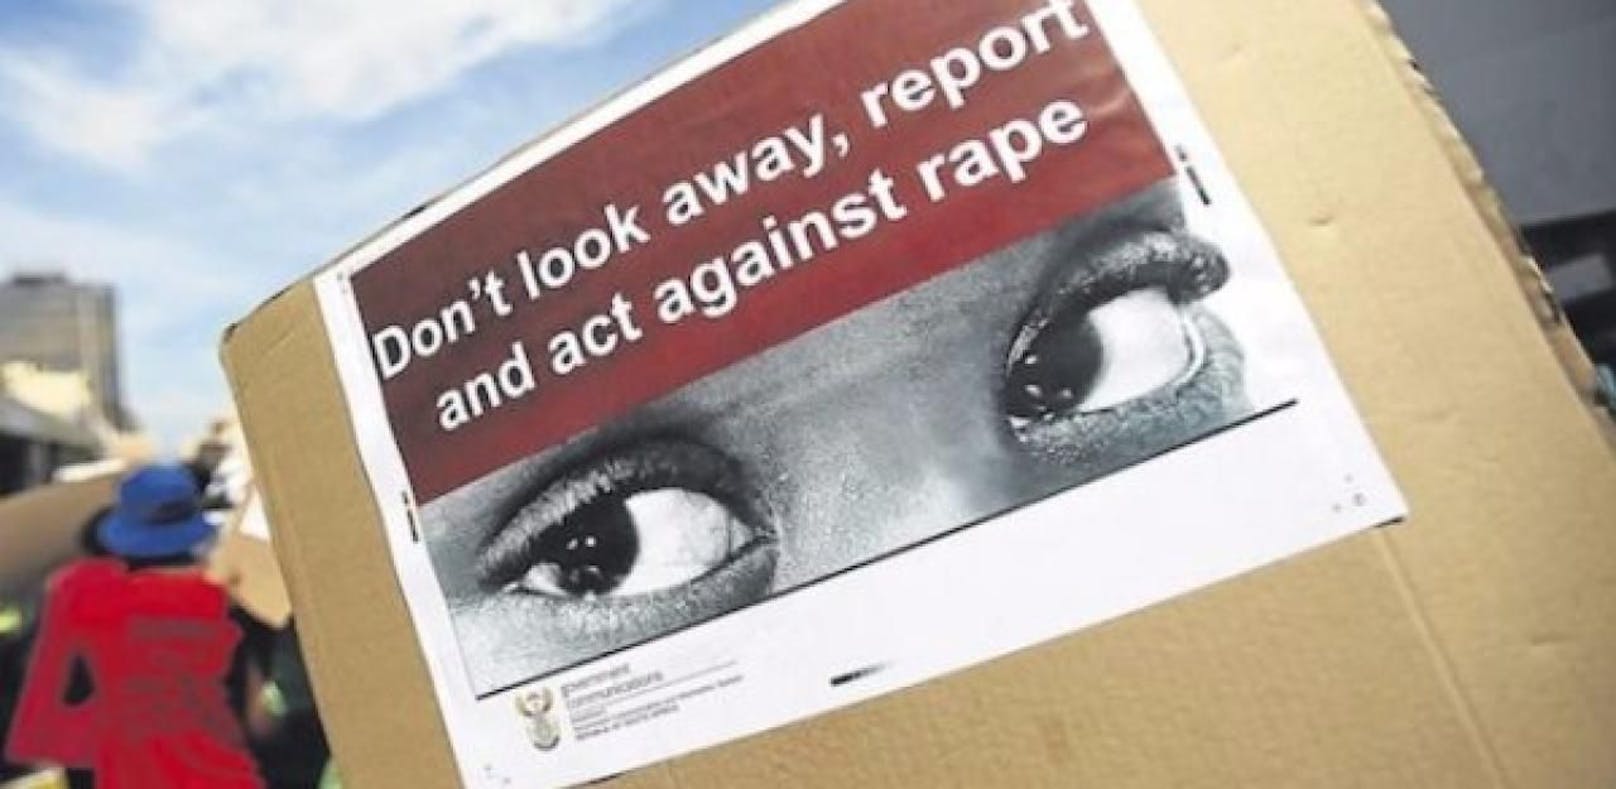 Über 100 Vergewaltigungen pro Tag in Südafrika: Eine Frauenorganisation fordert mehr Polizeiposten in ländlichen Gebieten.